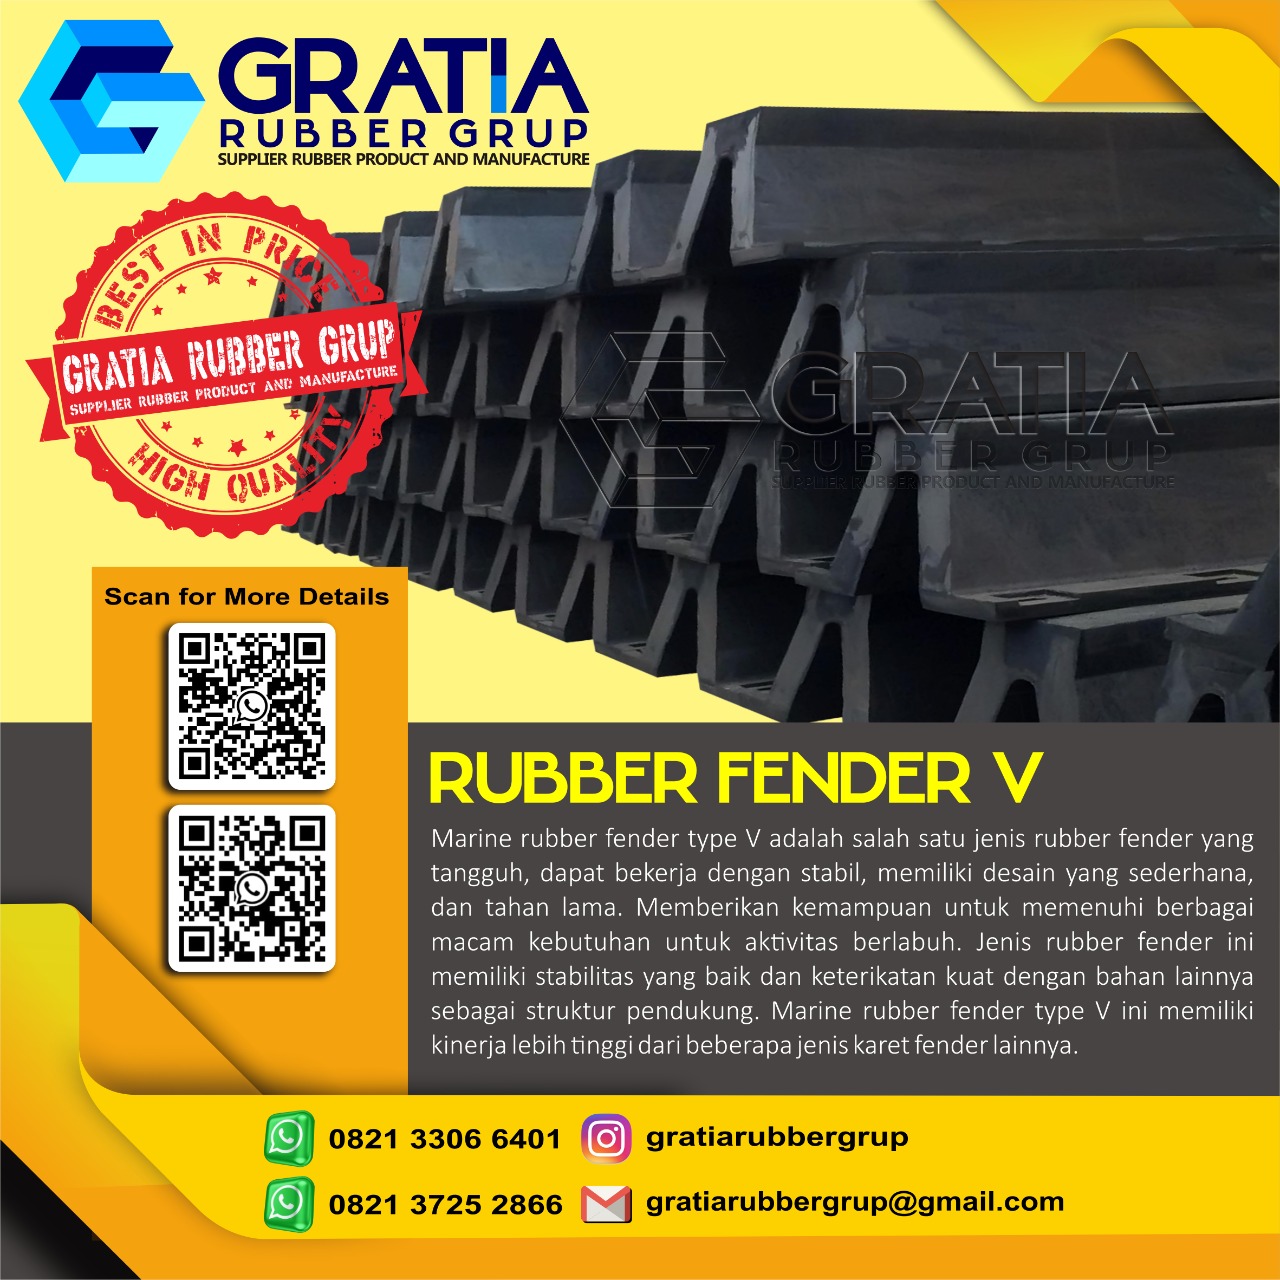 Jual Rubber Fender Boat Murah Dan Berkualitas  Melayani Pengiriman Ke Prabumulih Sumatera Selatan Hub 0821 3306 0461